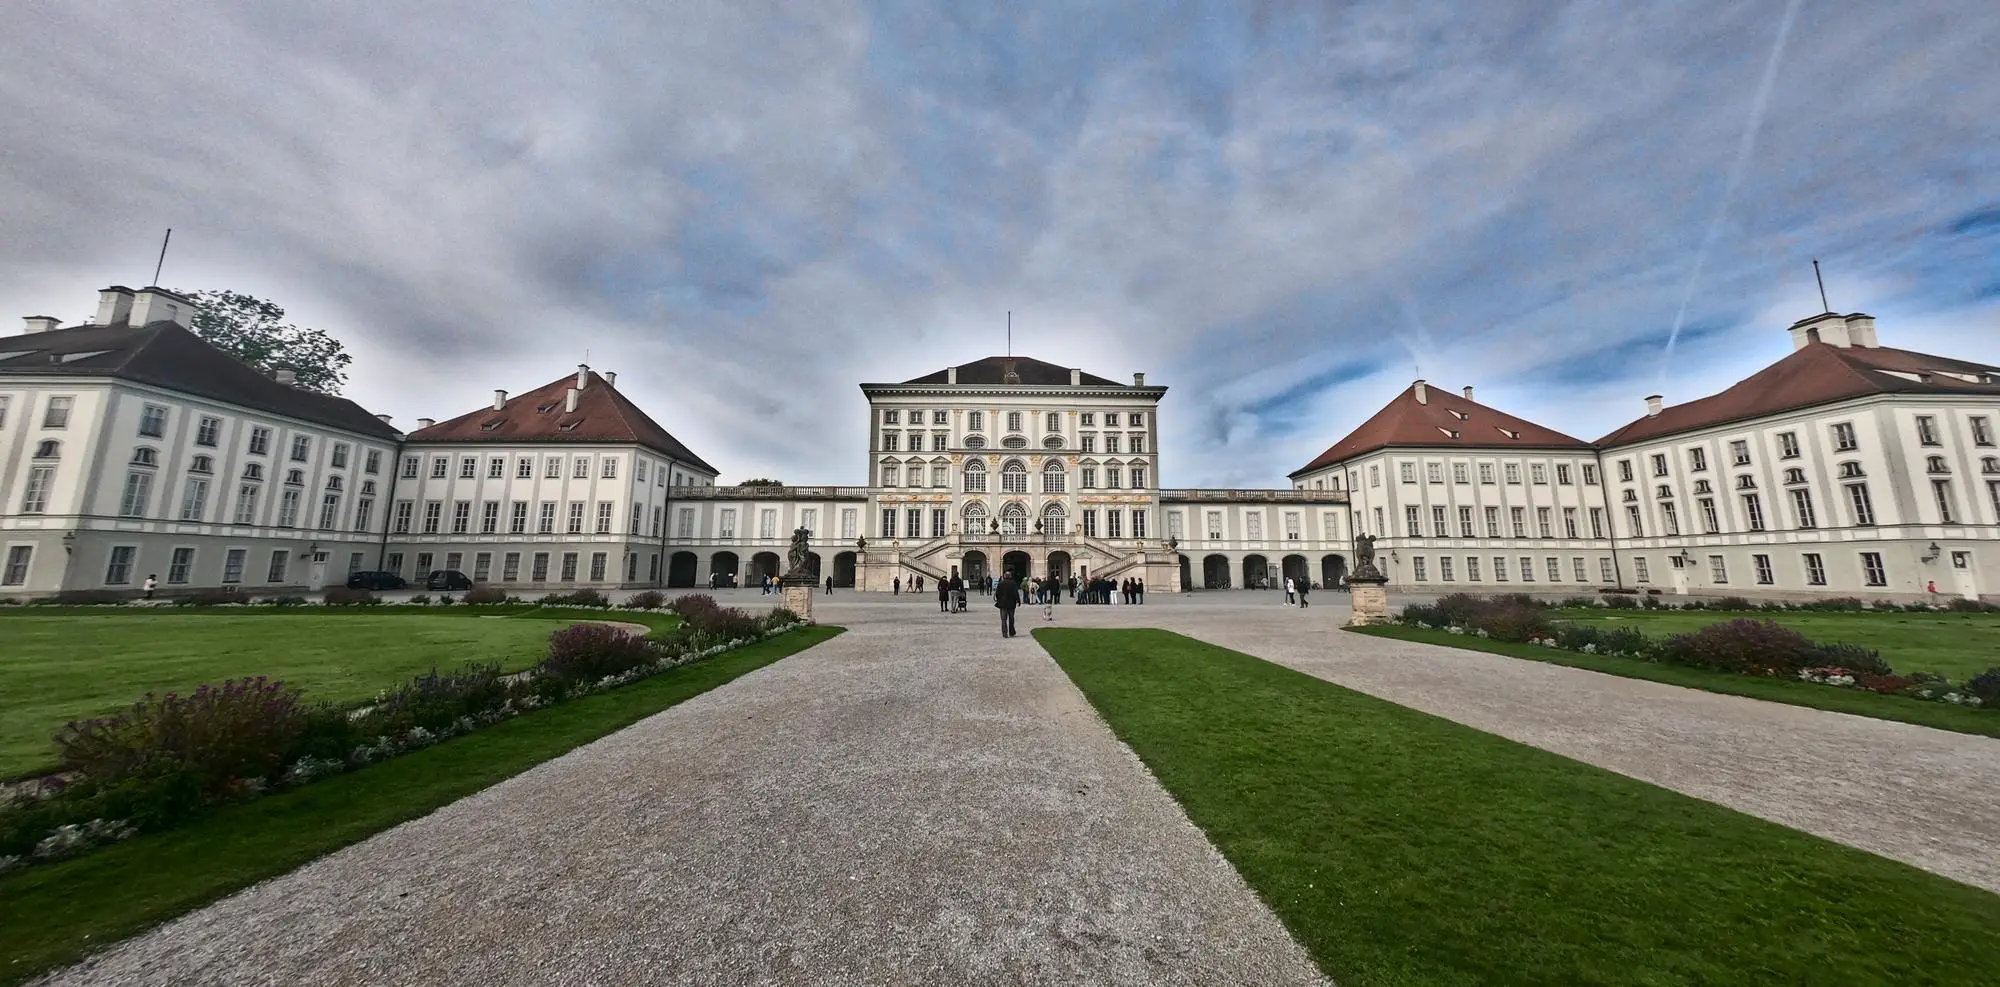 Monaco di Baviera cosa vedere - L'imponente Palazzo di Nymphenburg a Monaco di Baviera - 1 day itinerary munich